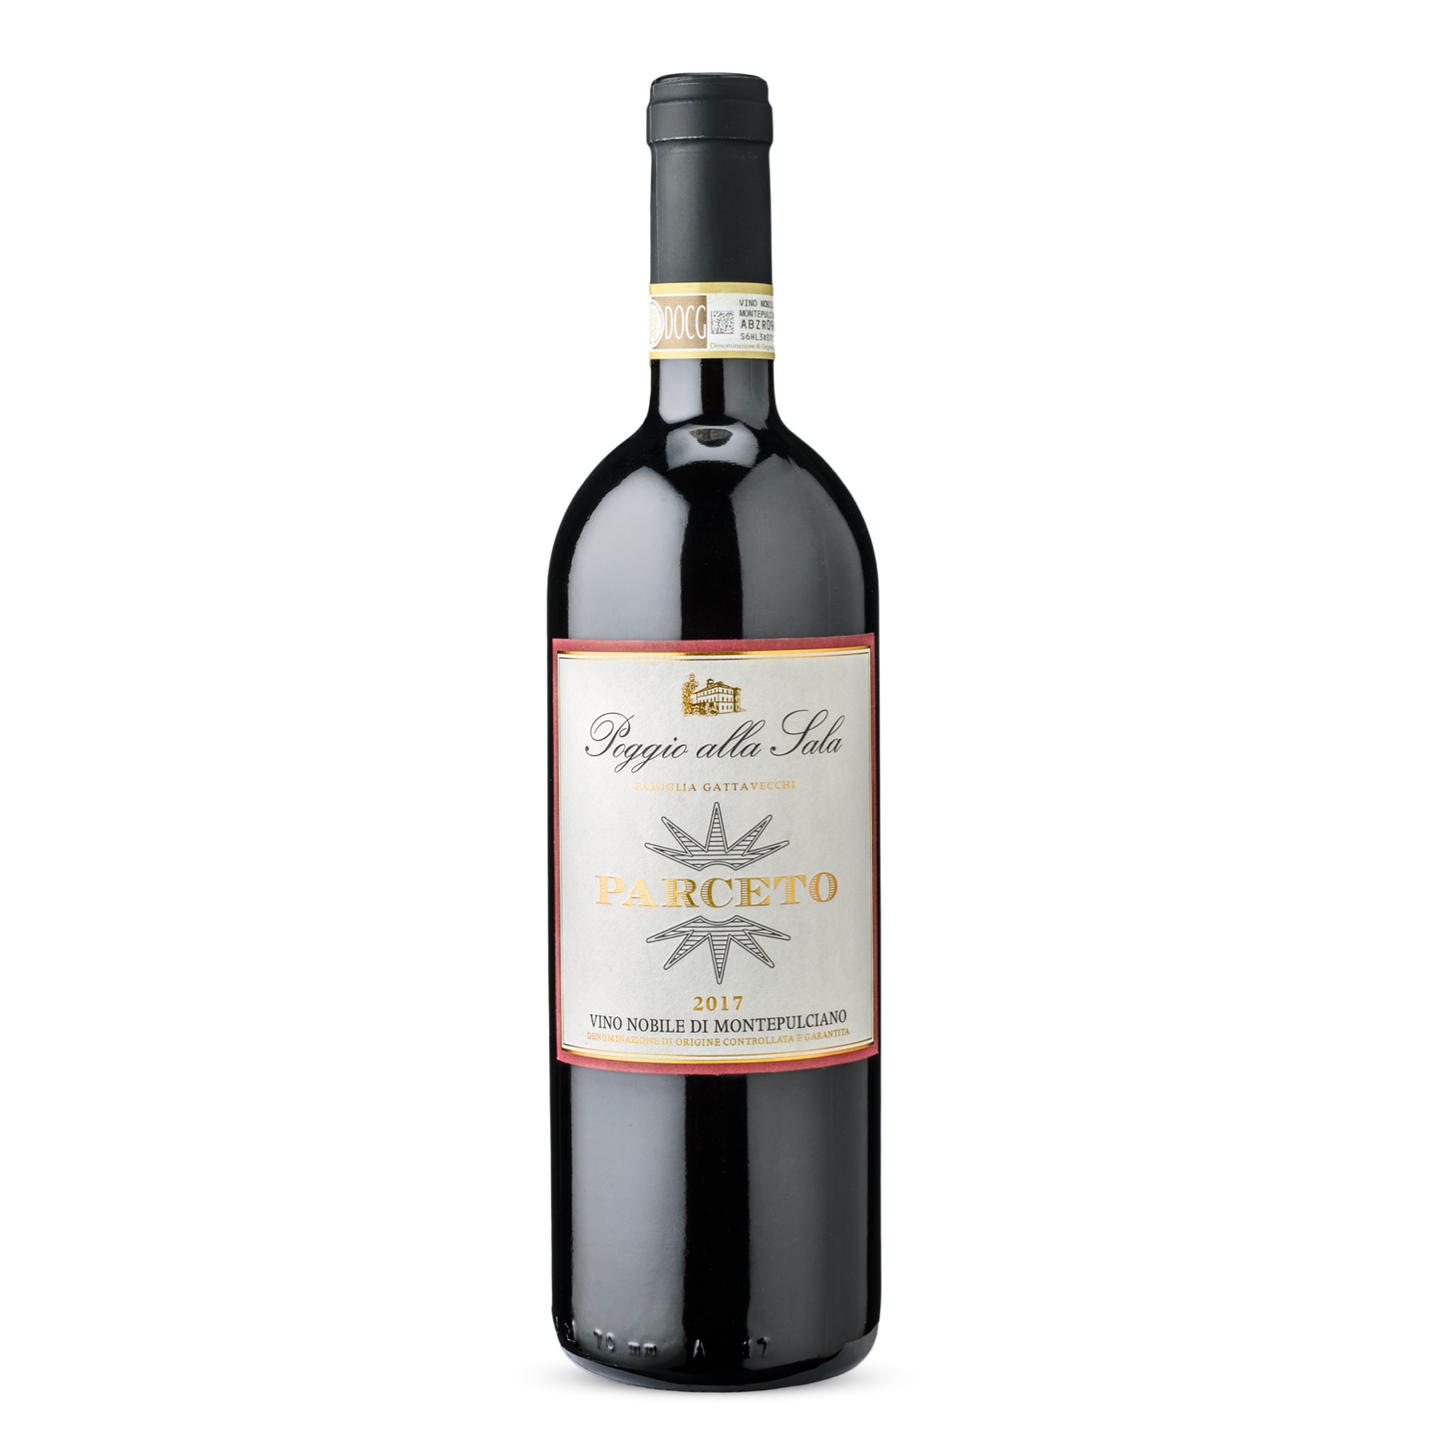 Gattavecchi - Vino nobile di montepulciano - Parceto 2018